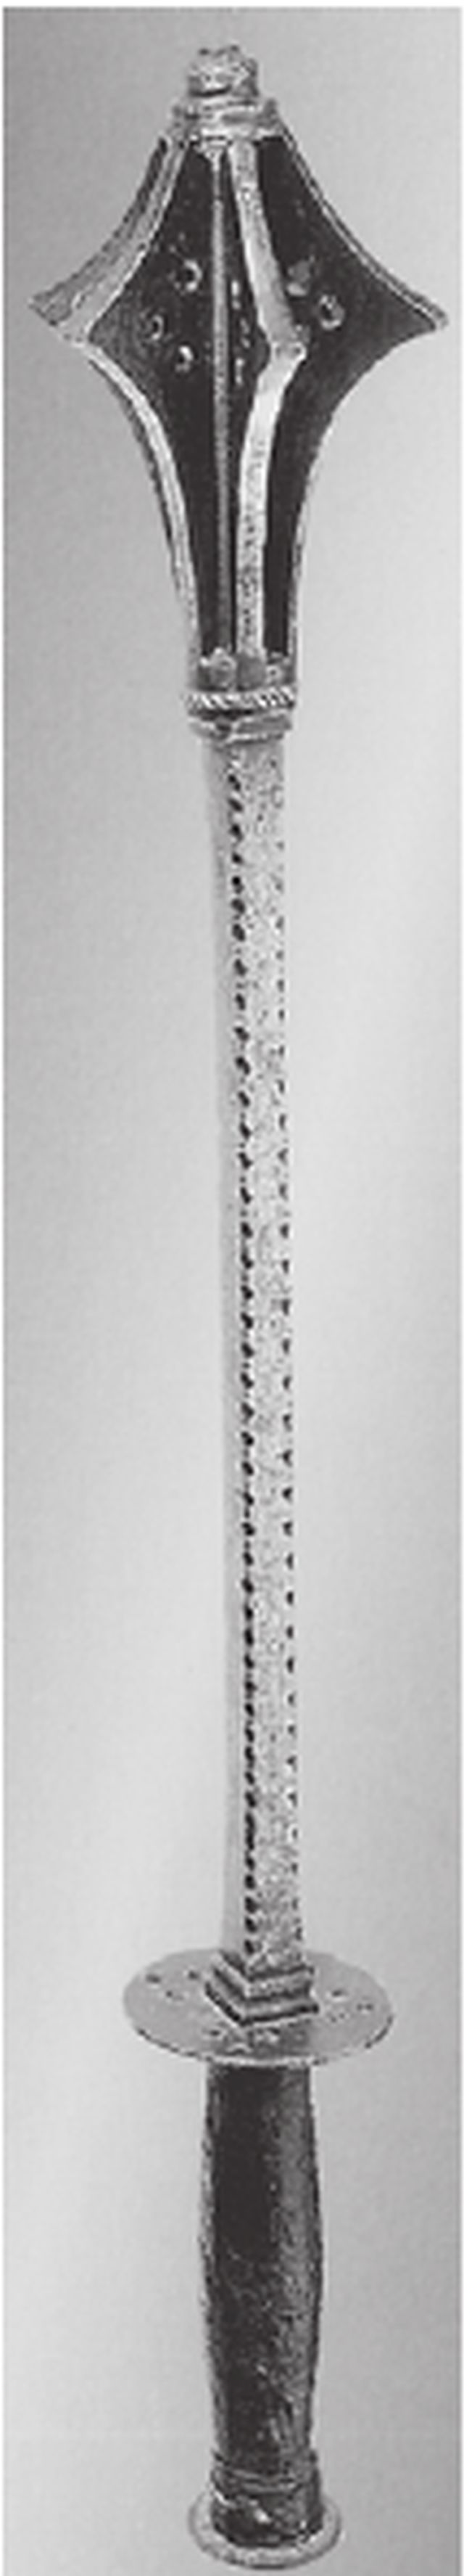 Шестопер. Герма¬ния, начало XVI в. Длина 550 мм. Из бывшей коллекции Акселя Гутмана